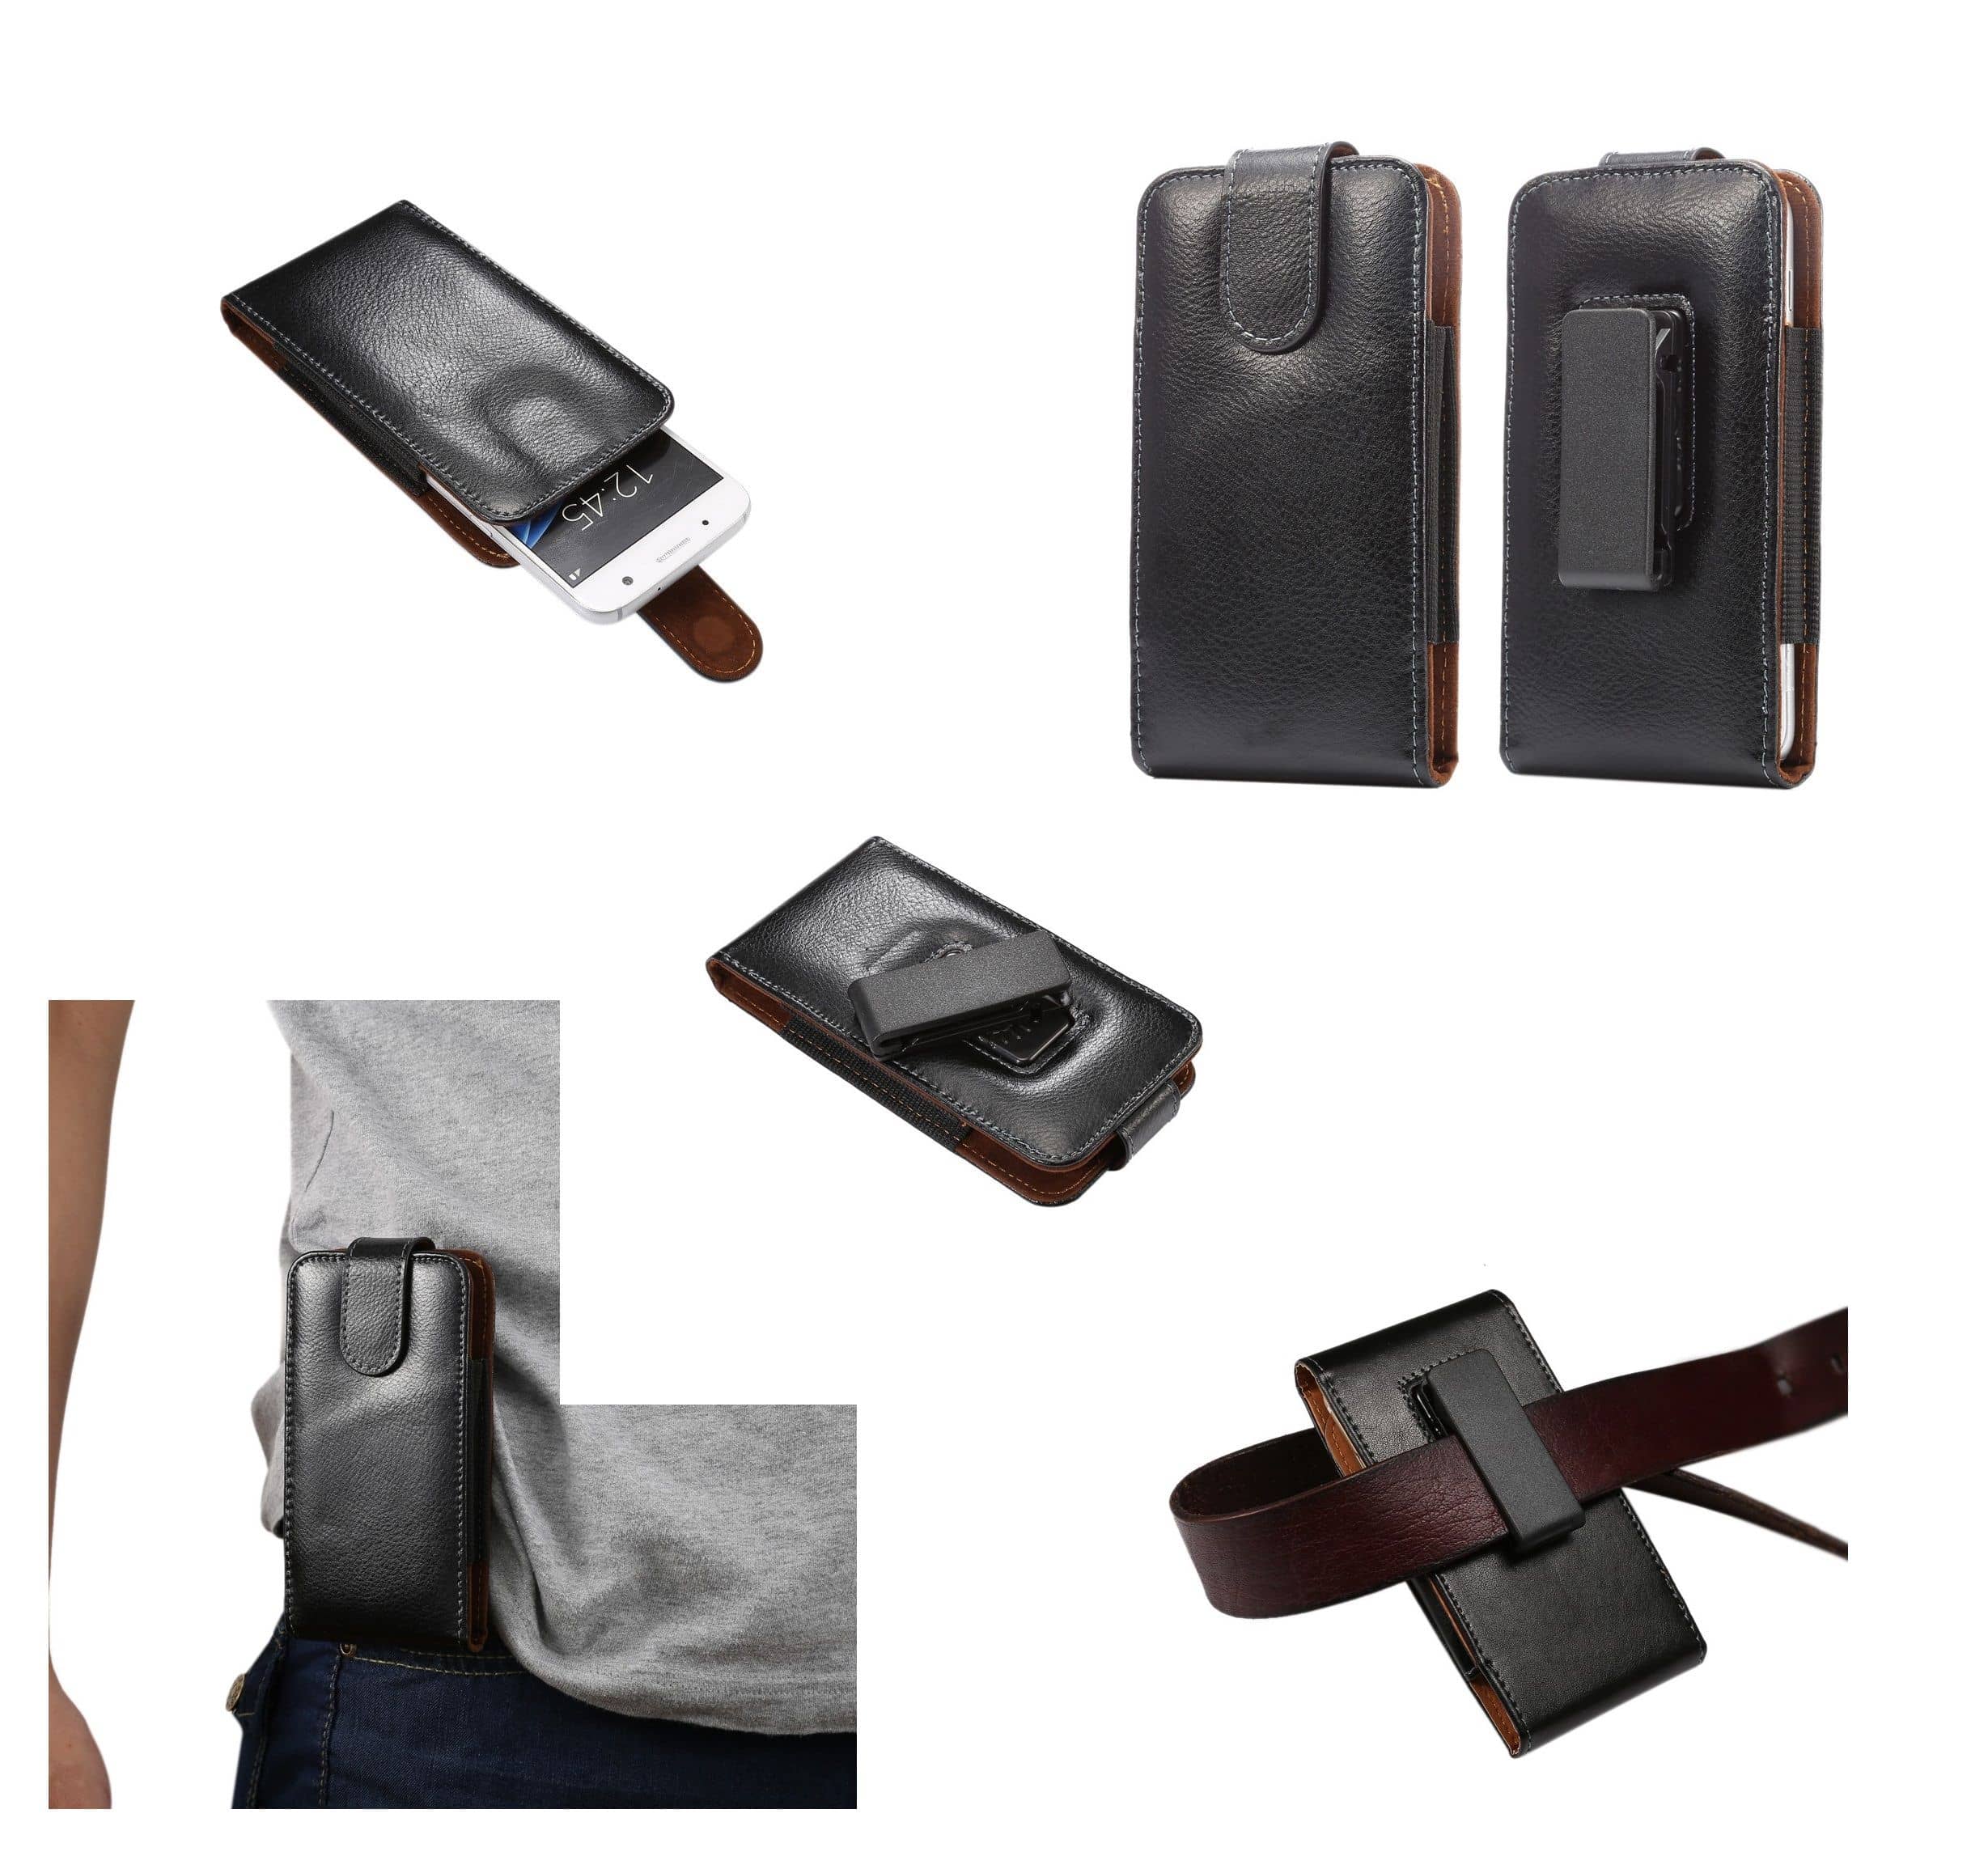 縮圖 2 - for Sony Xperia TL LT30a (Sony Mint) Genuine Leather Holster Executive Case b...